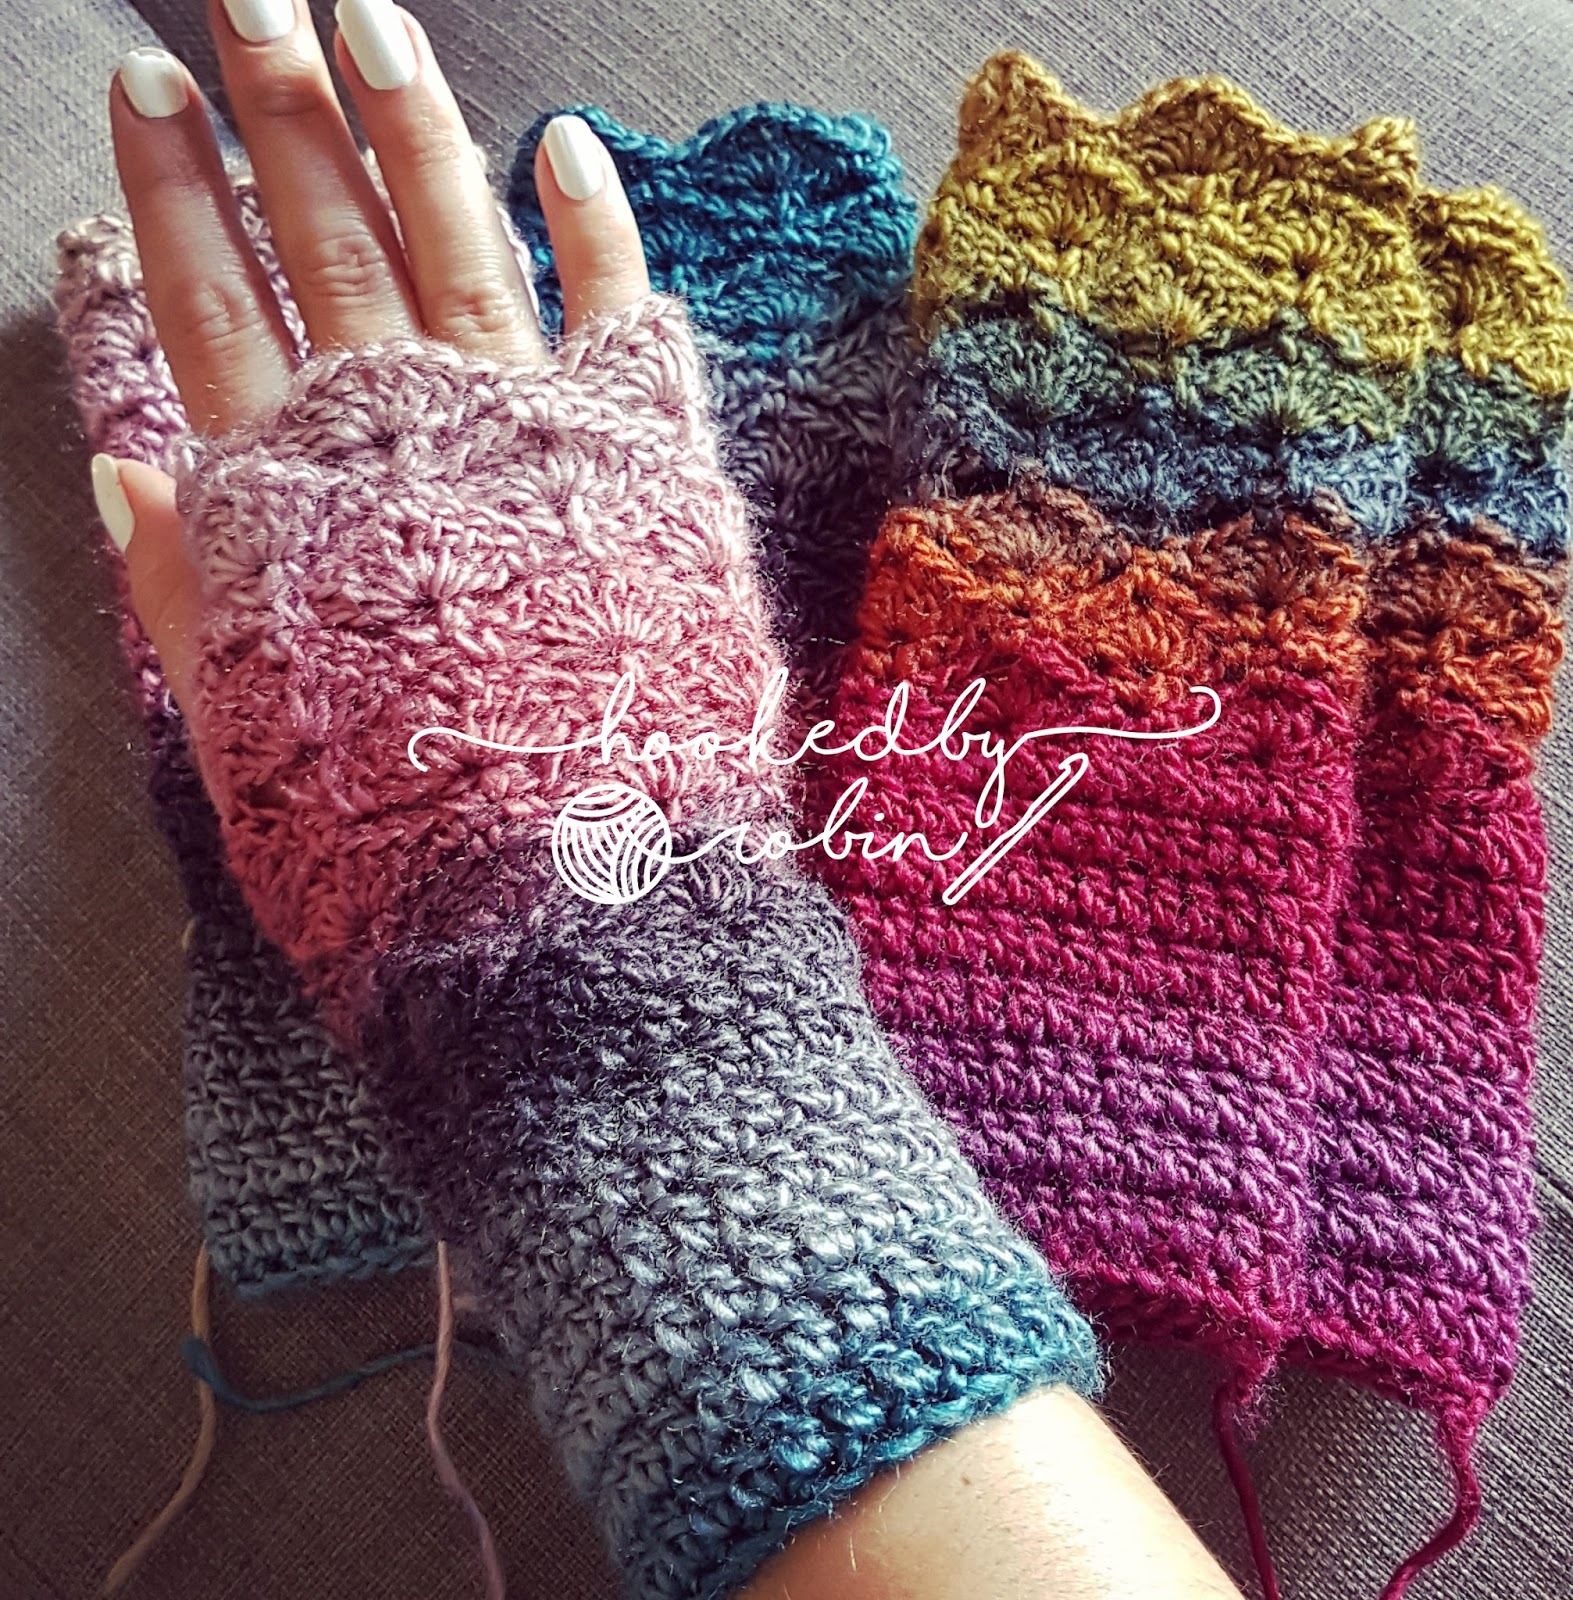 Free Crochet Pattern Hand Warmers Fantail Shell Stitch Fingerless Gloves Free Crochet Pattern